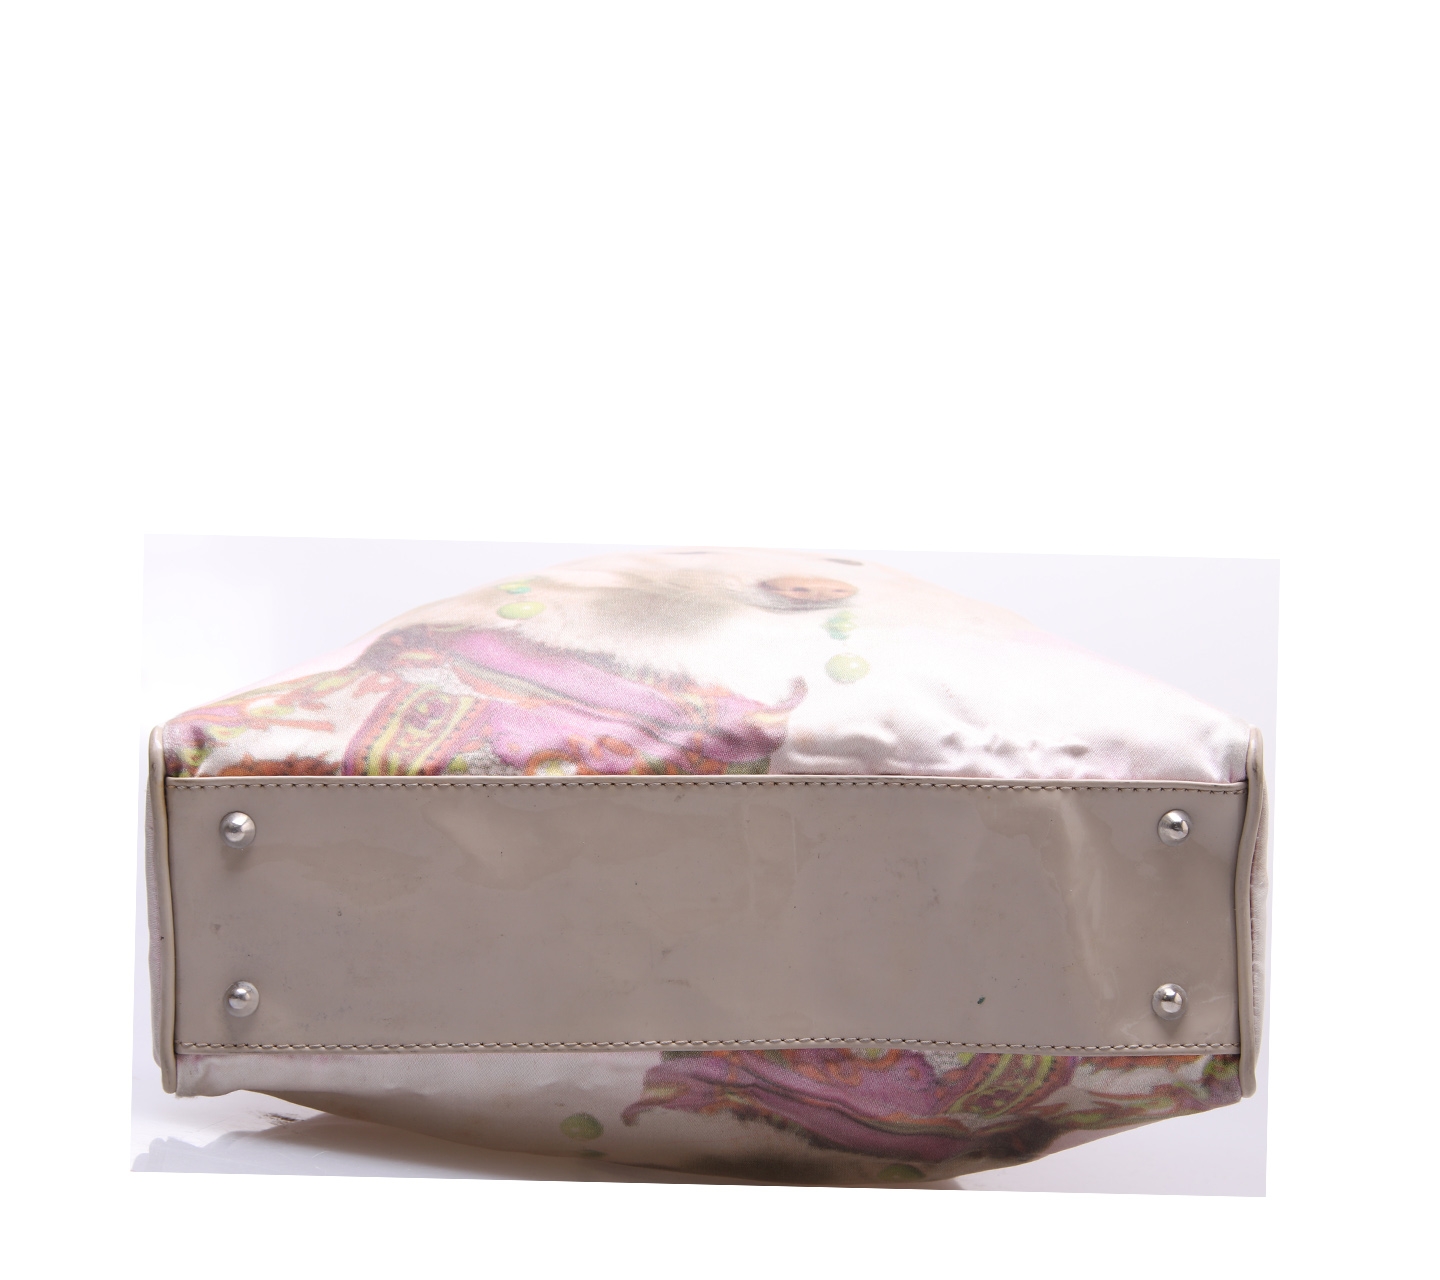 Anya Hindmarch Pink And Cream Handbag